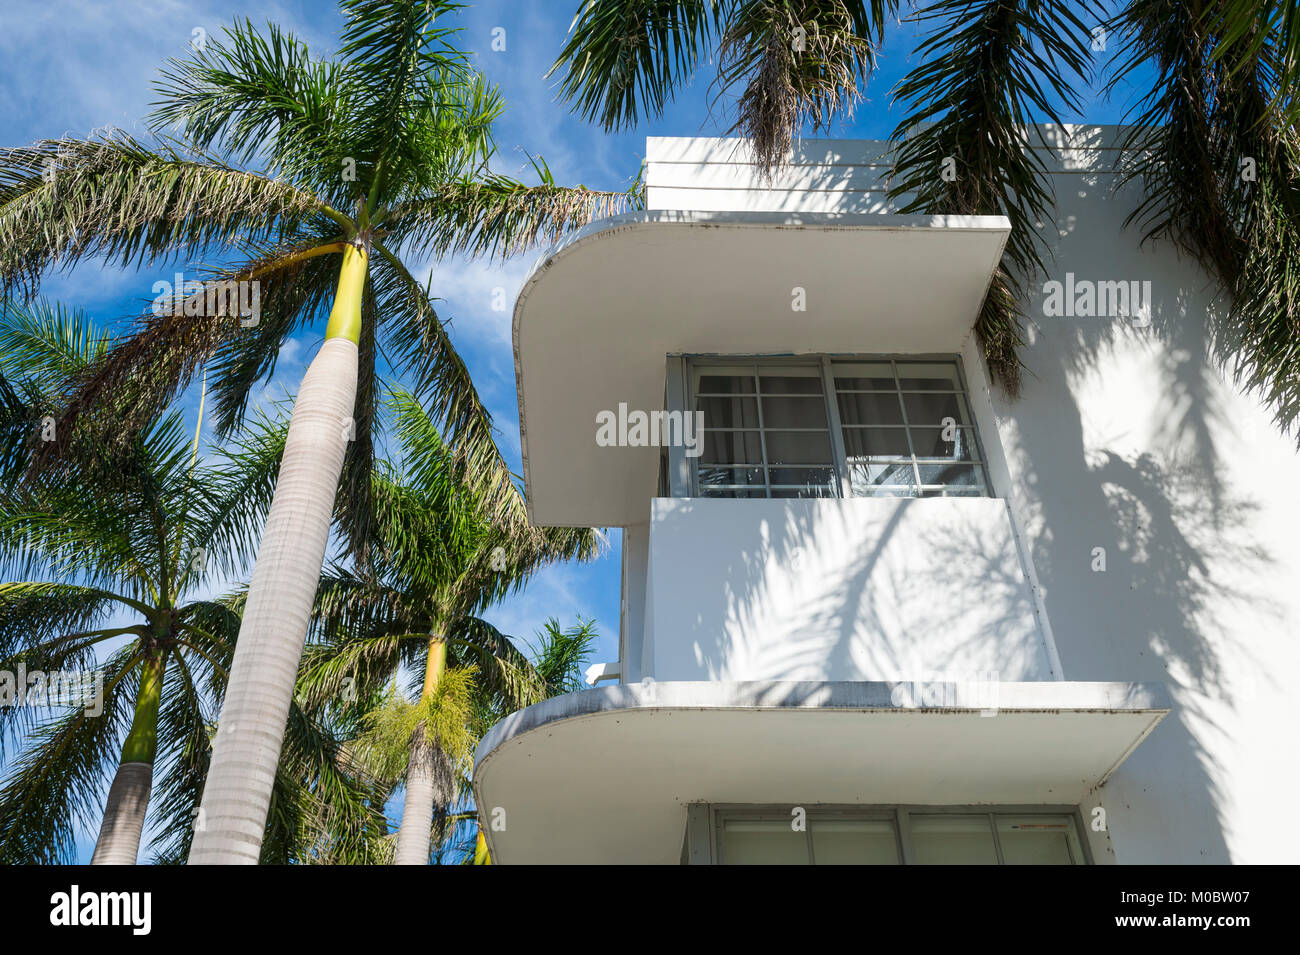 Dettaglio della classica architettura Art Deco con palme e cielo blu a South Beach, Miami, Florida Foto Stock